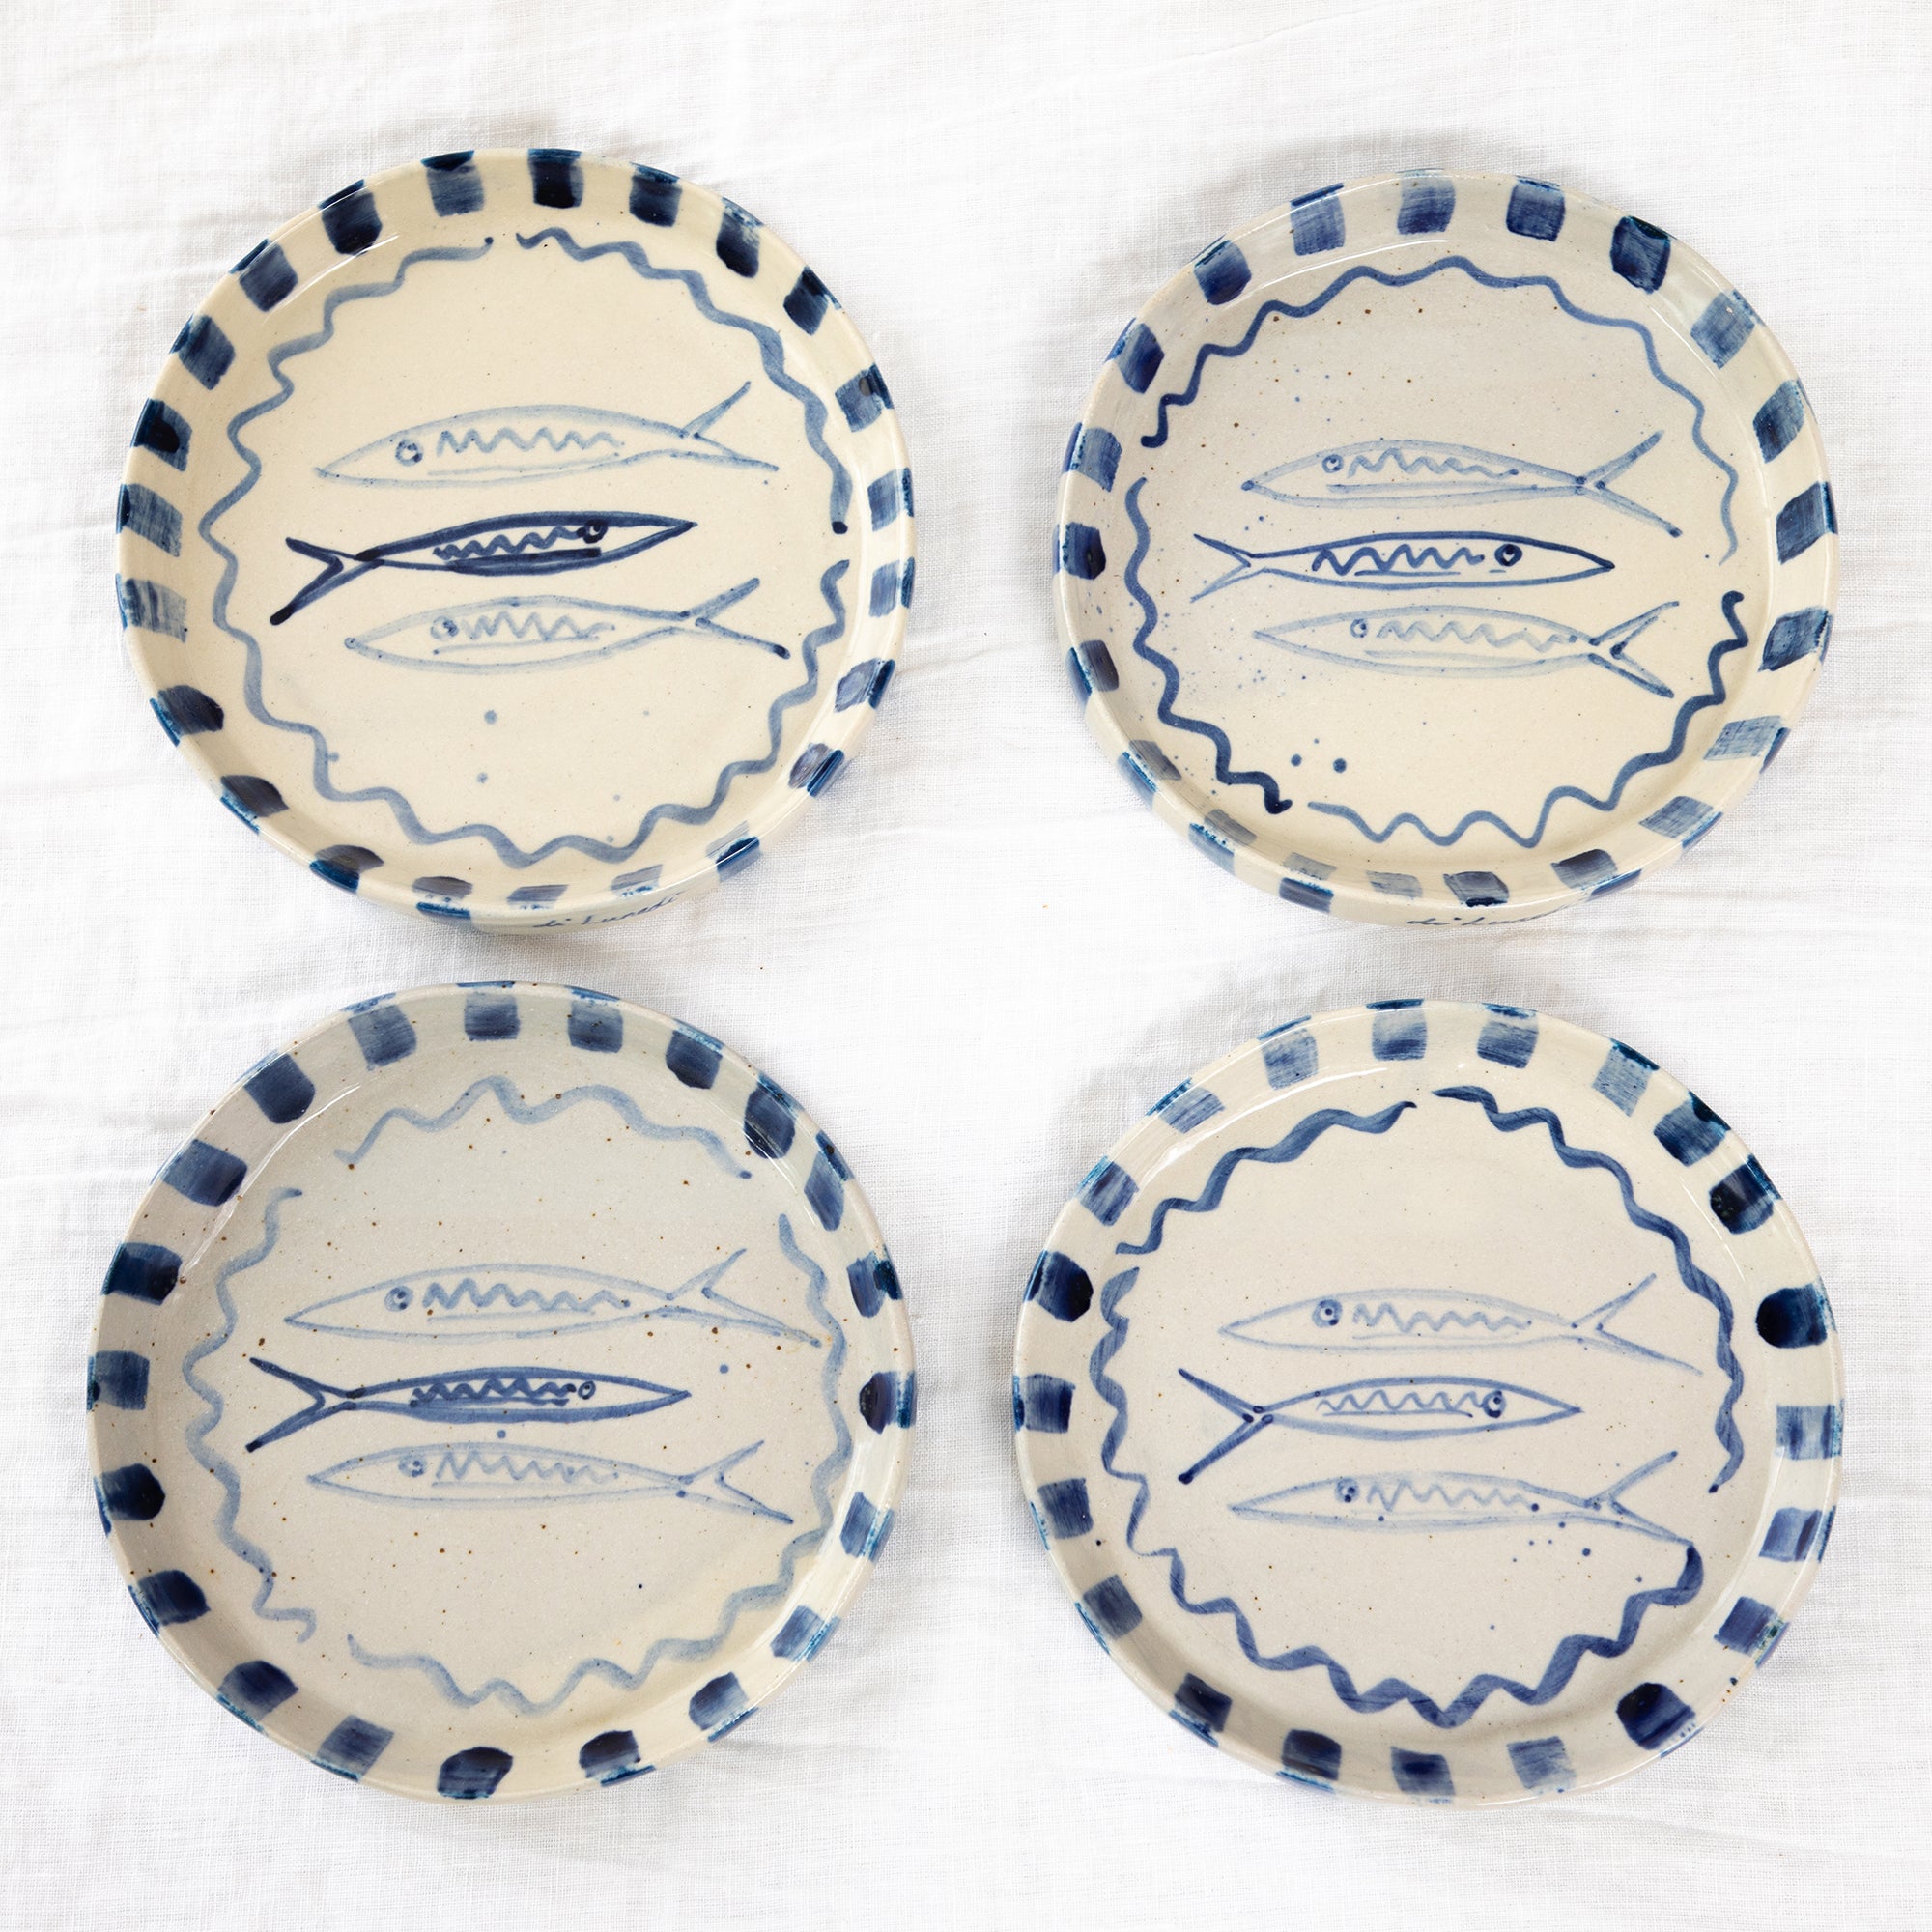 Hand Built Sardine Plate - Mediterranean Blue